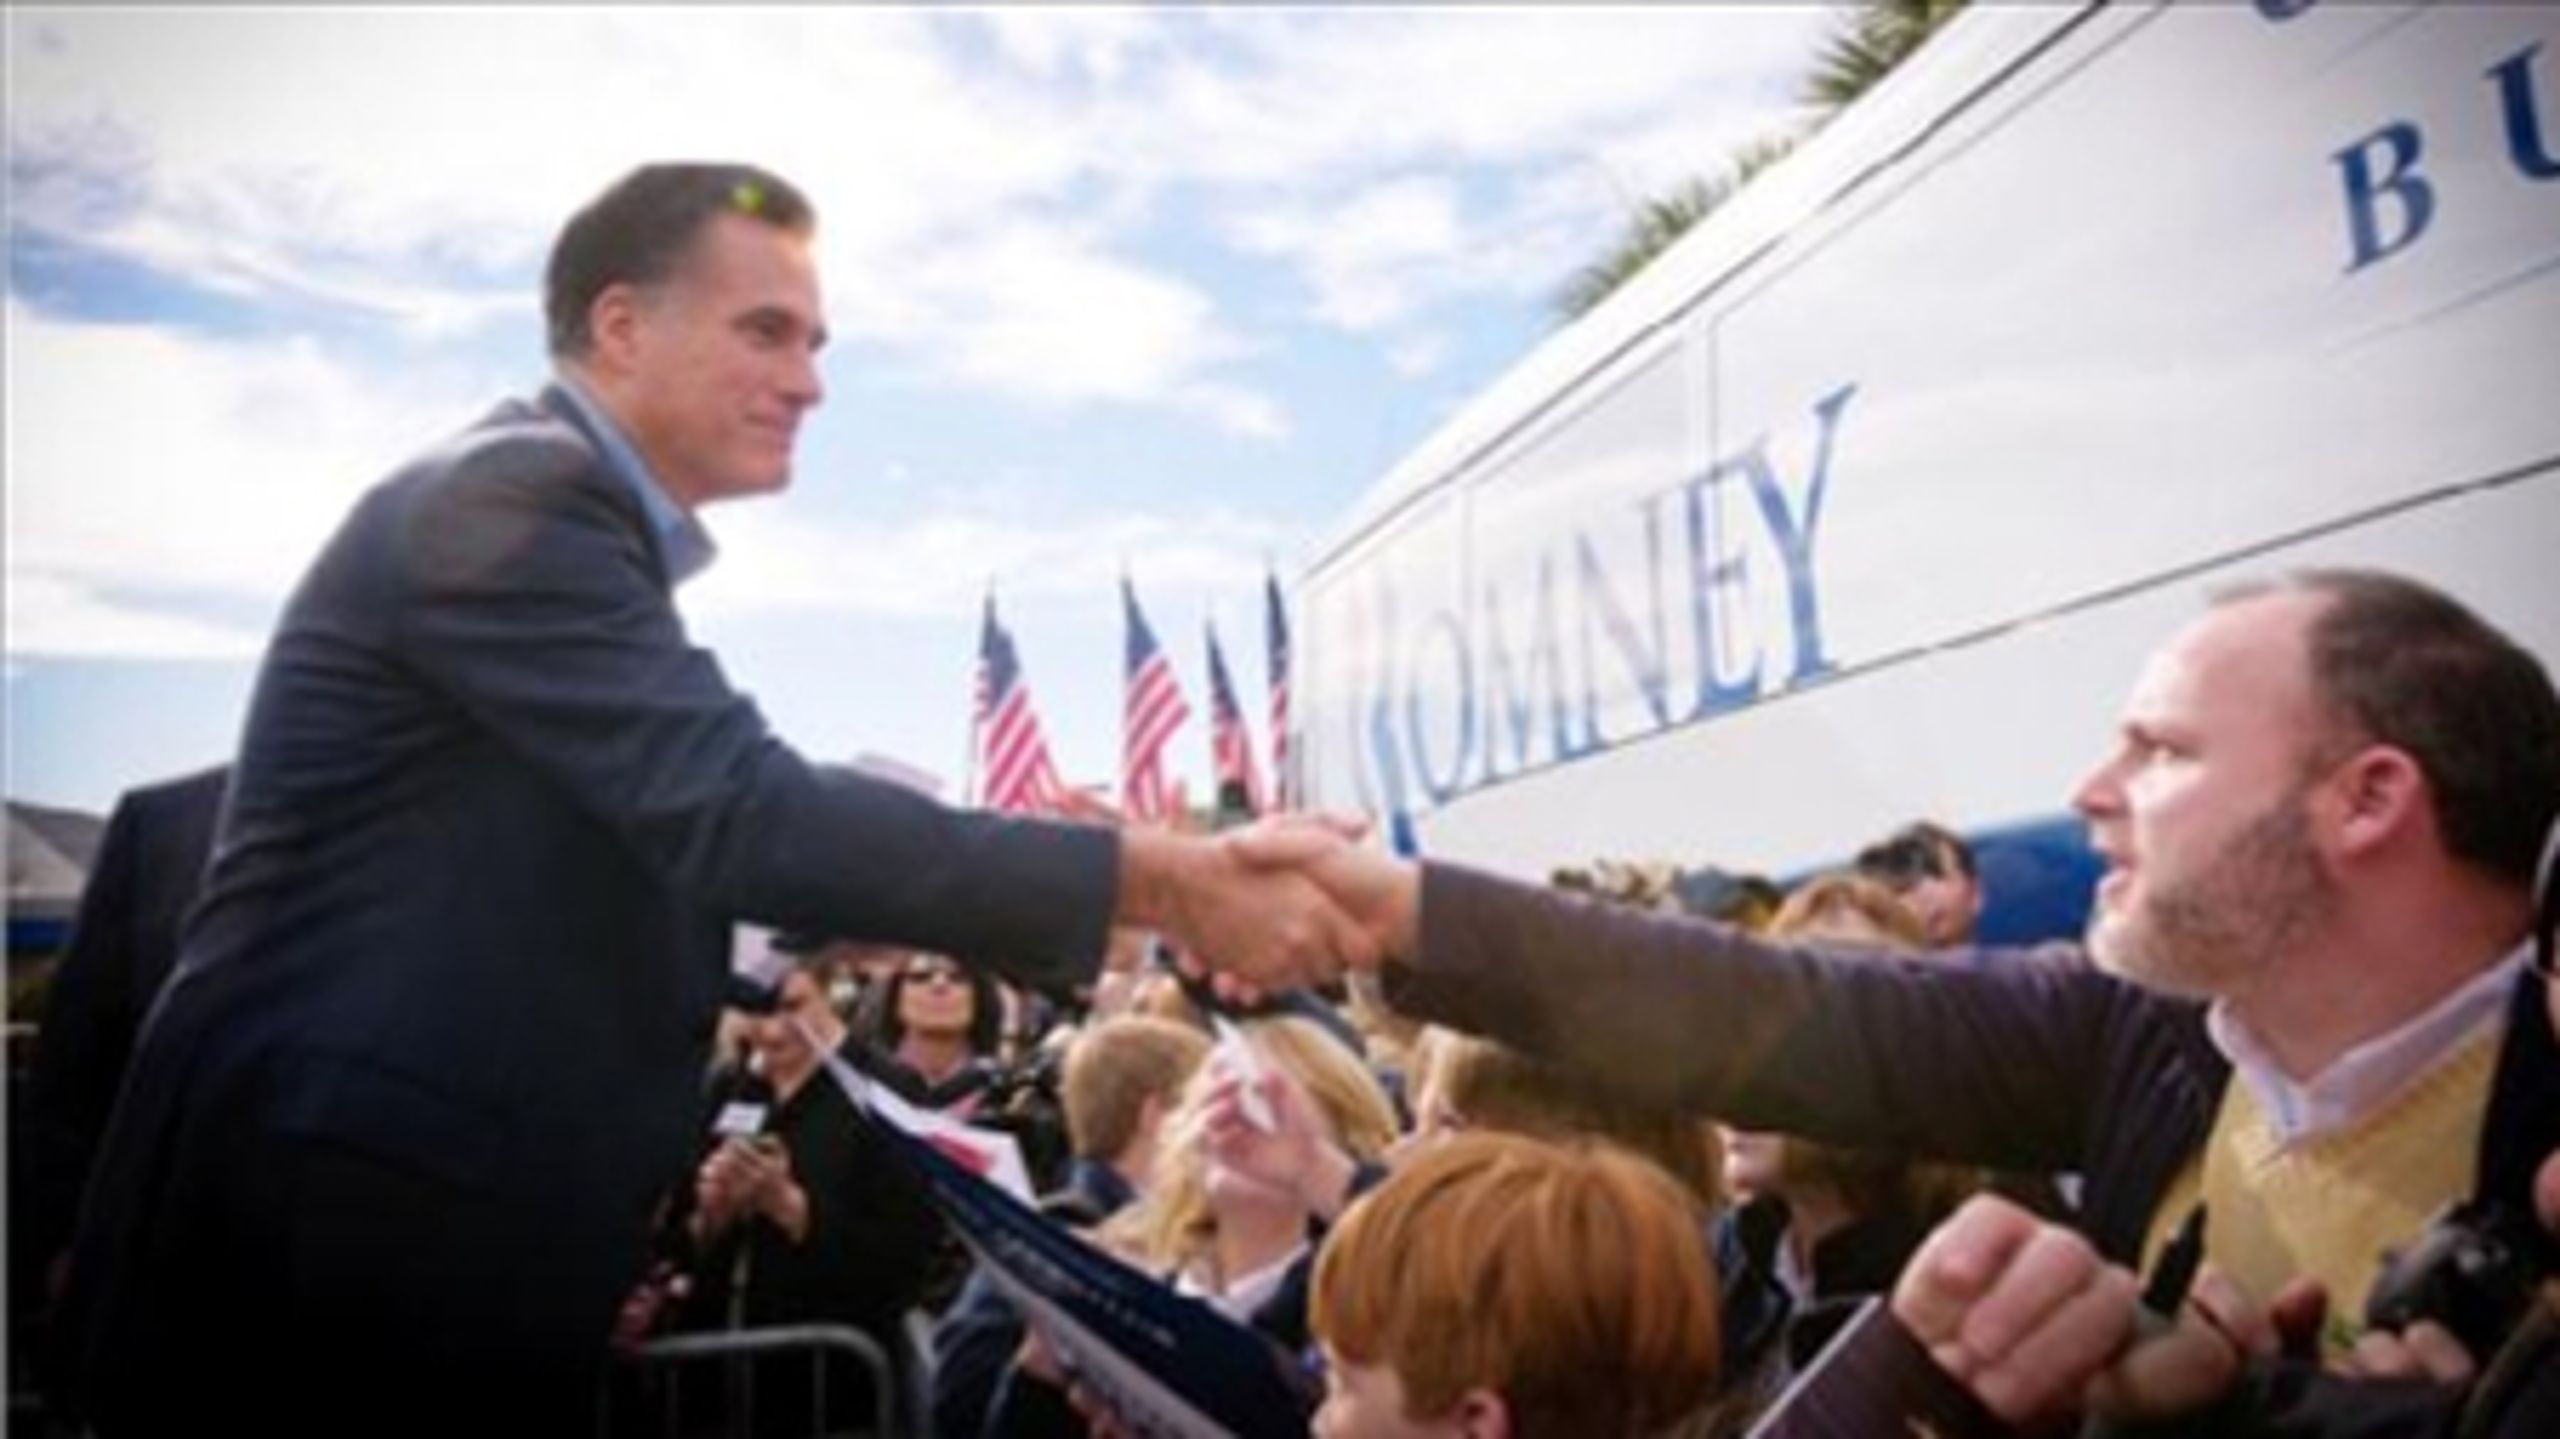 Inden primærvalget i Florida tirsdag ligger Mitt Romney og Newt Gingrich helt lige i meningsmålingerne. Begge kandidater har været i Florida i flere dage for at forsøge at kapre stemmer. Her er det Romney, der hilser på vælgere i Florida.